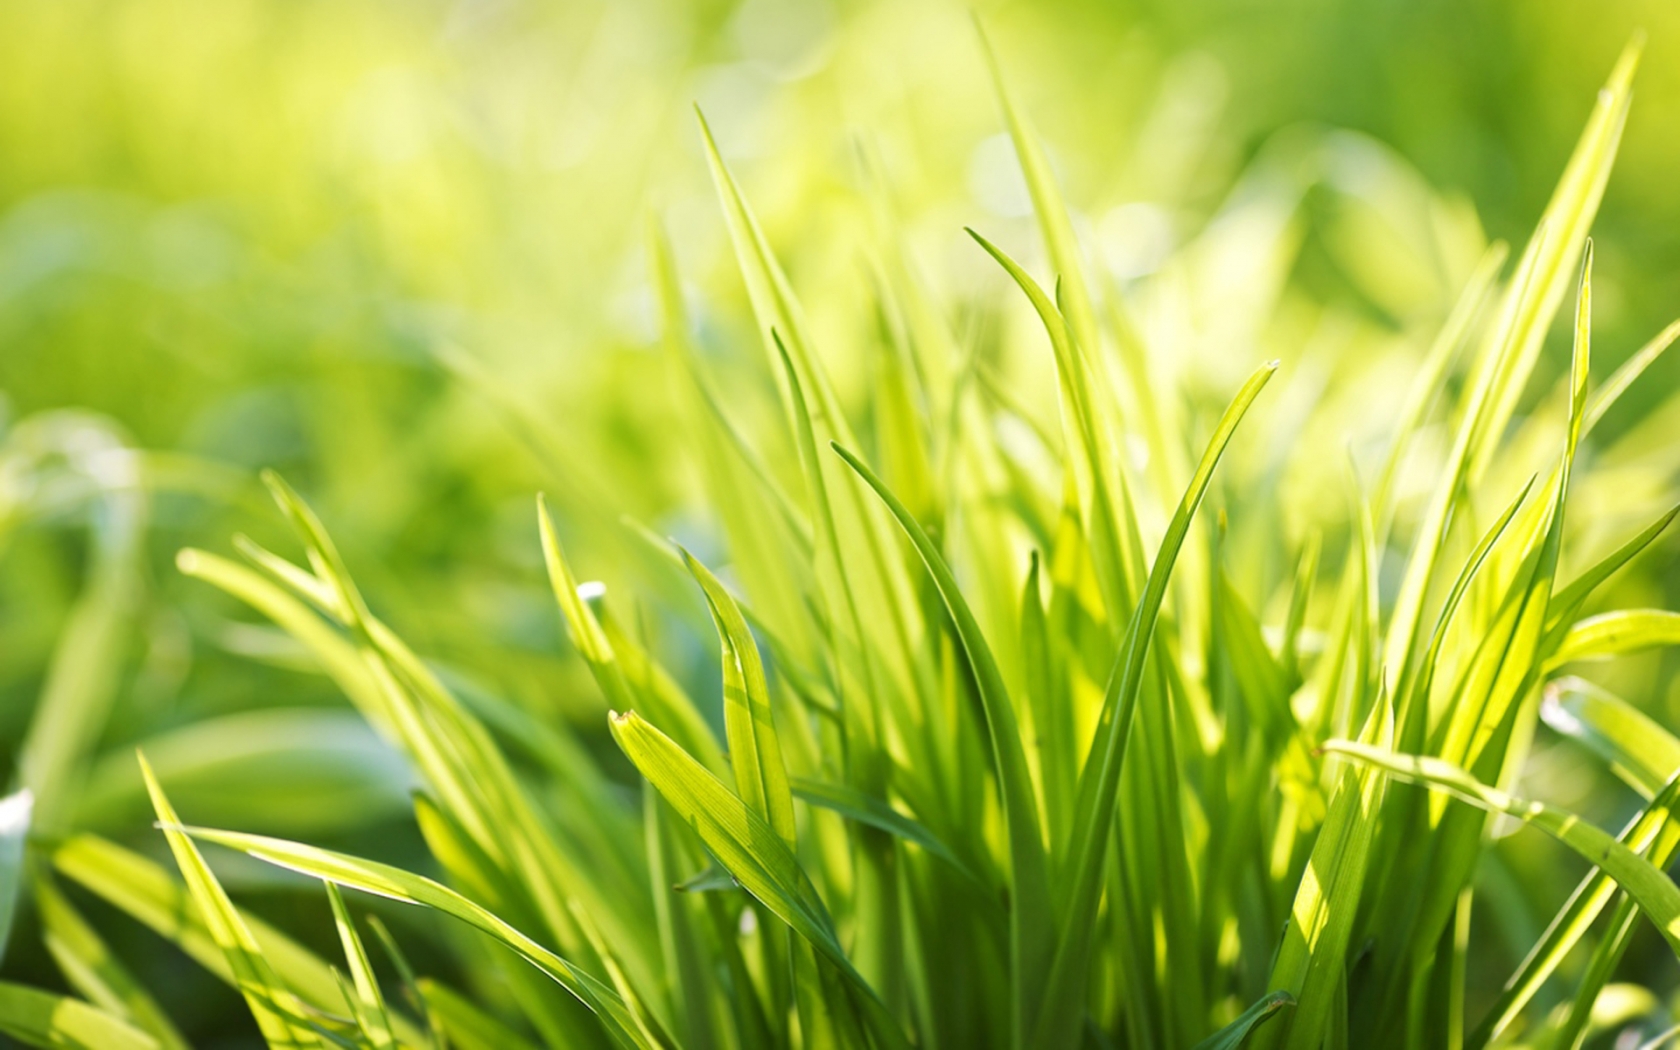 Ever Green Grass for 1680 x 1050 widescreen resolution